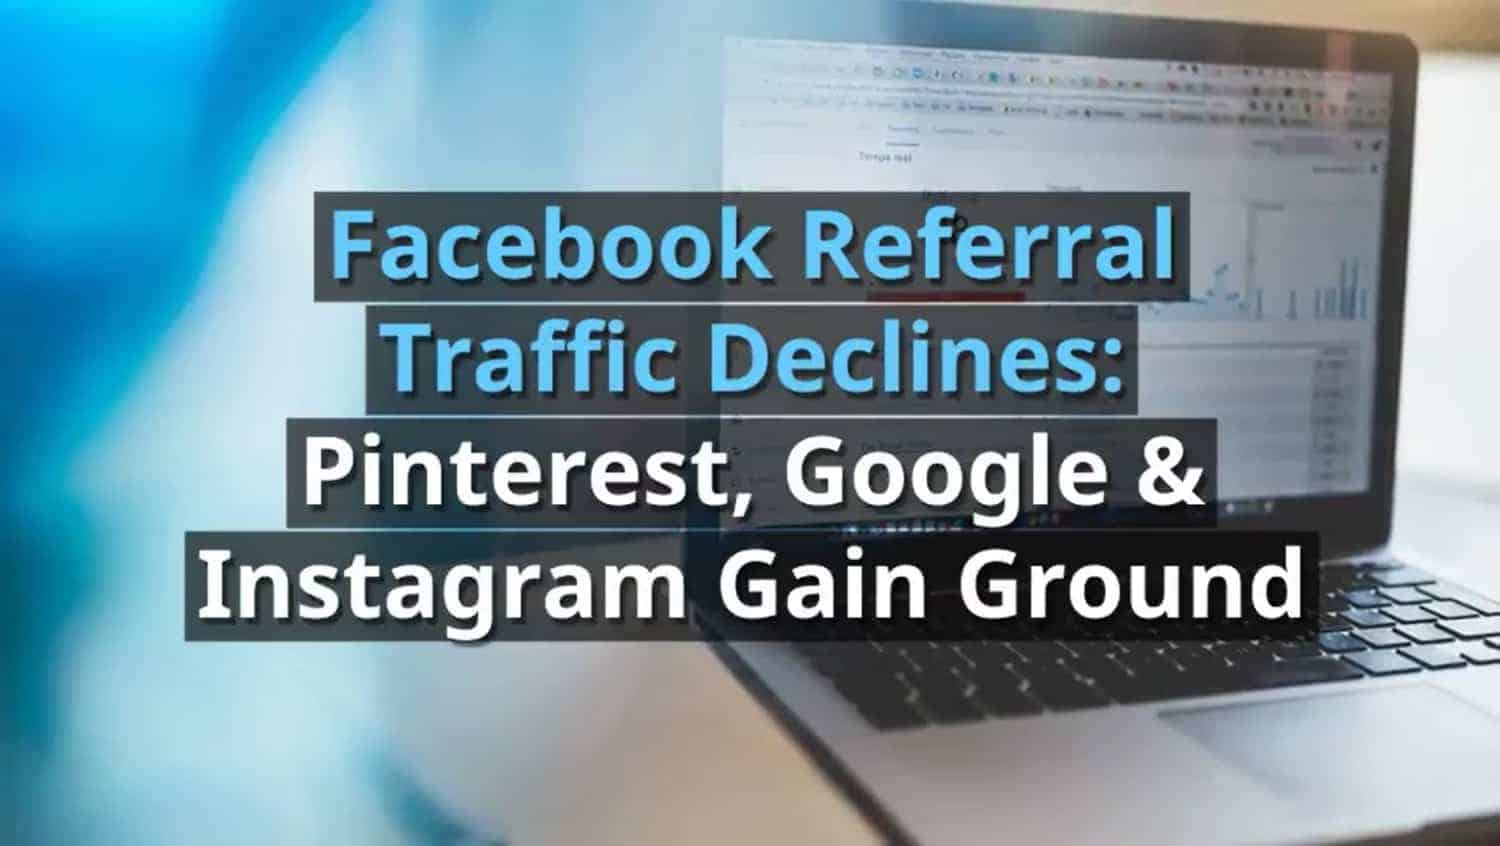 Facebook Referral Traffic Declines: Pinterest, Google & Instagram Gain Ground